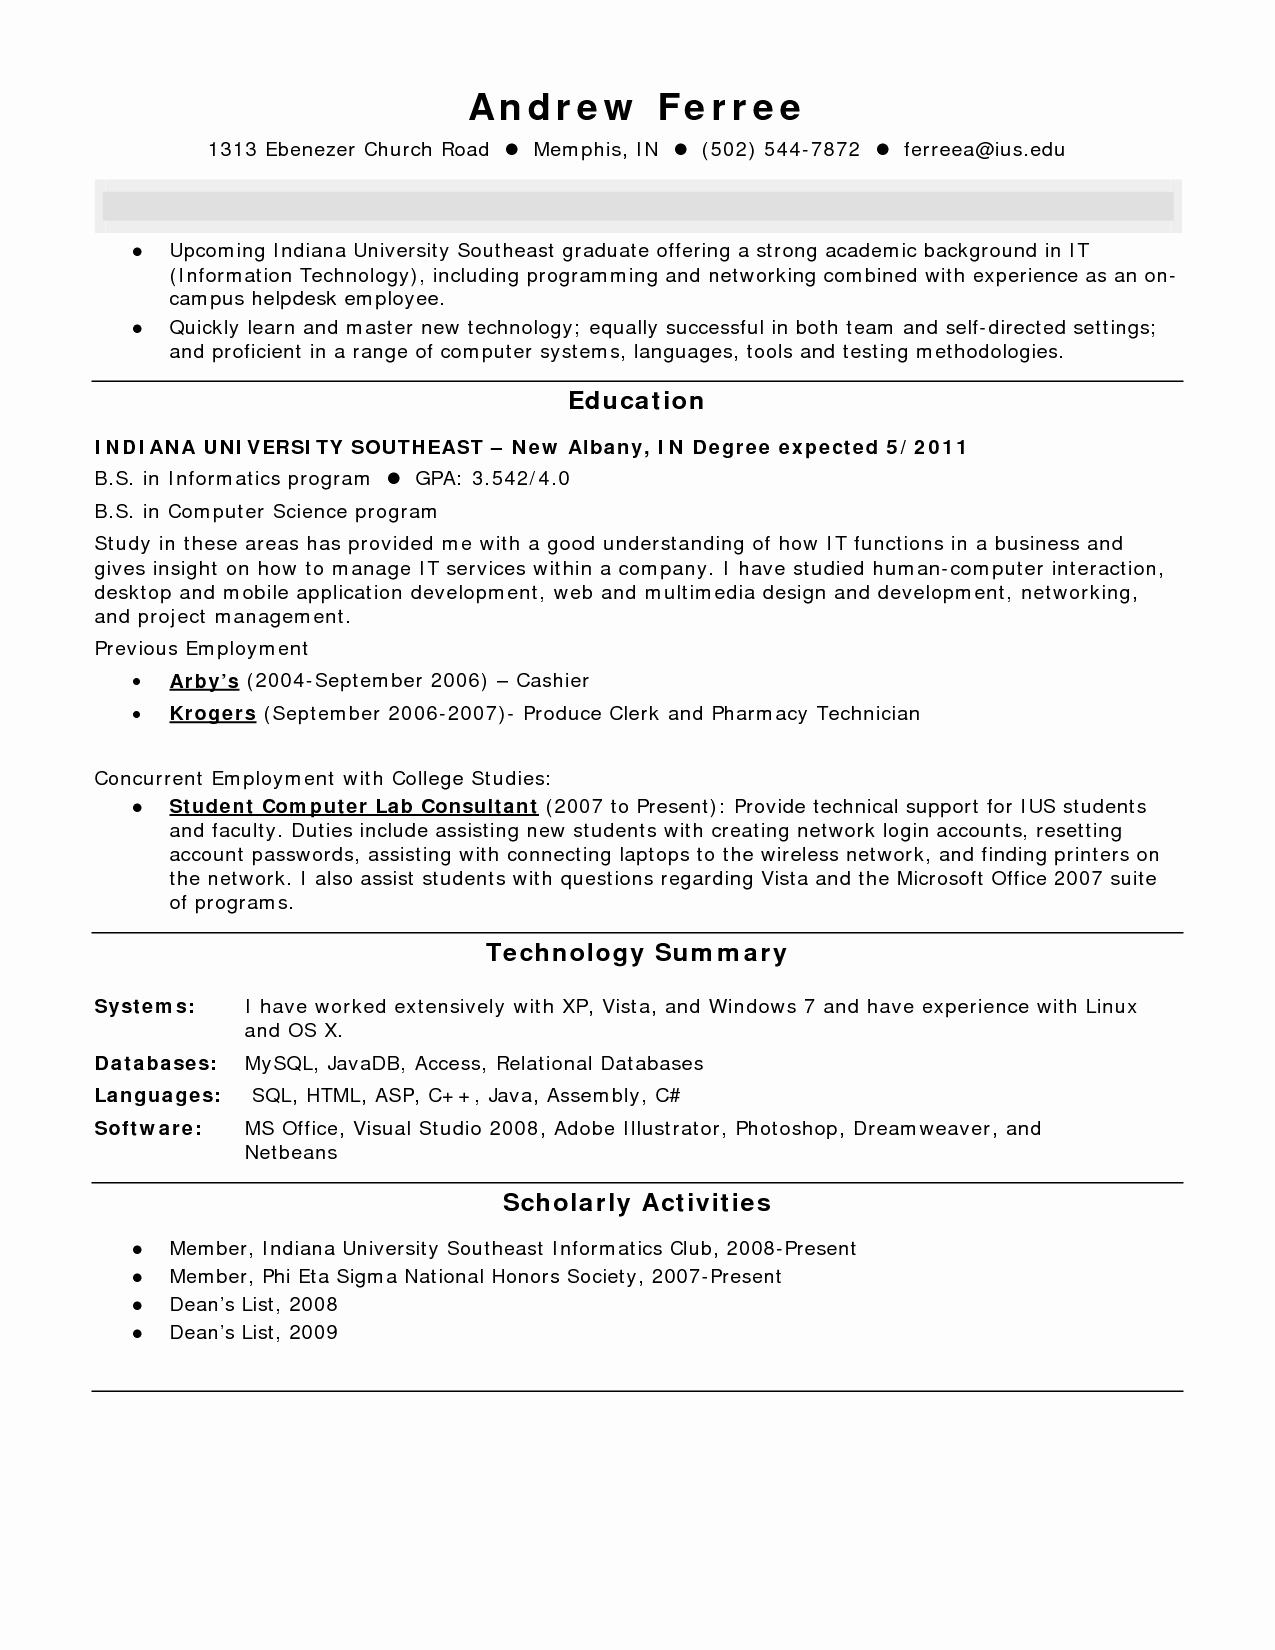 Pharmacy Technician Resume Summary